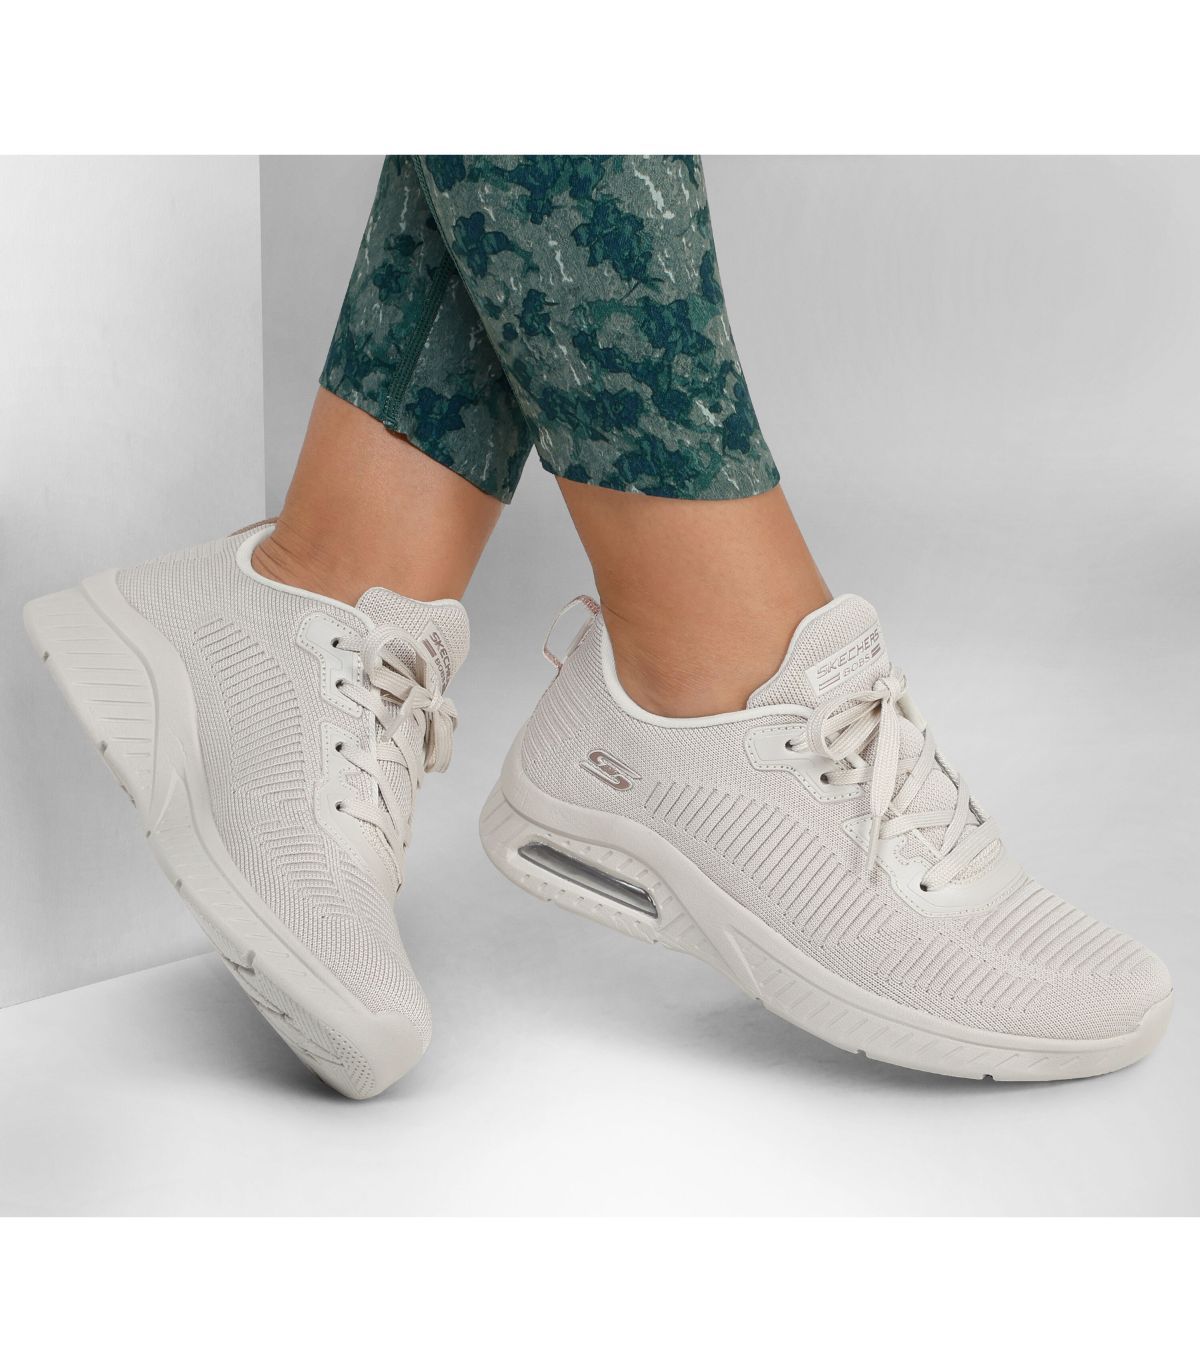 Zapatillas de mujer  Compra zapatillas para mujer online